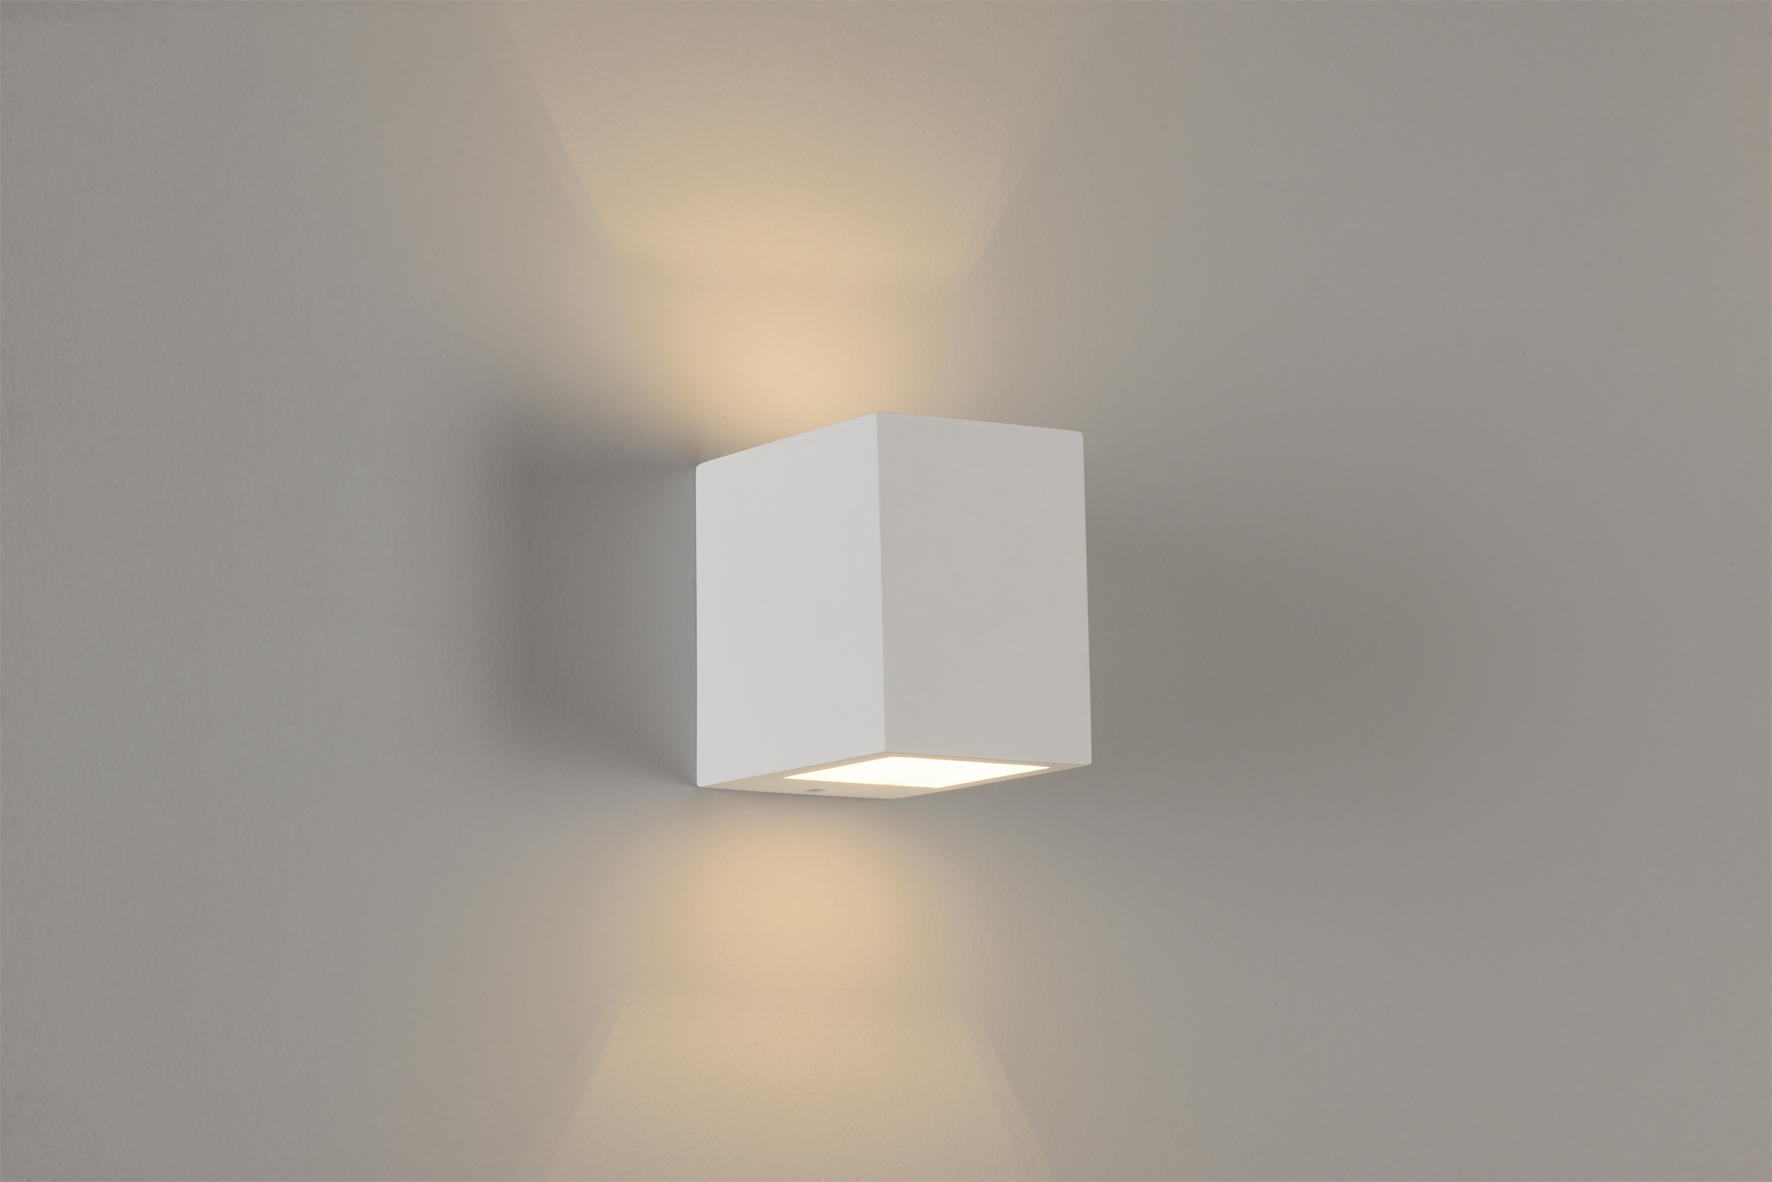 水泥石膏壁灯 GU10 / LED